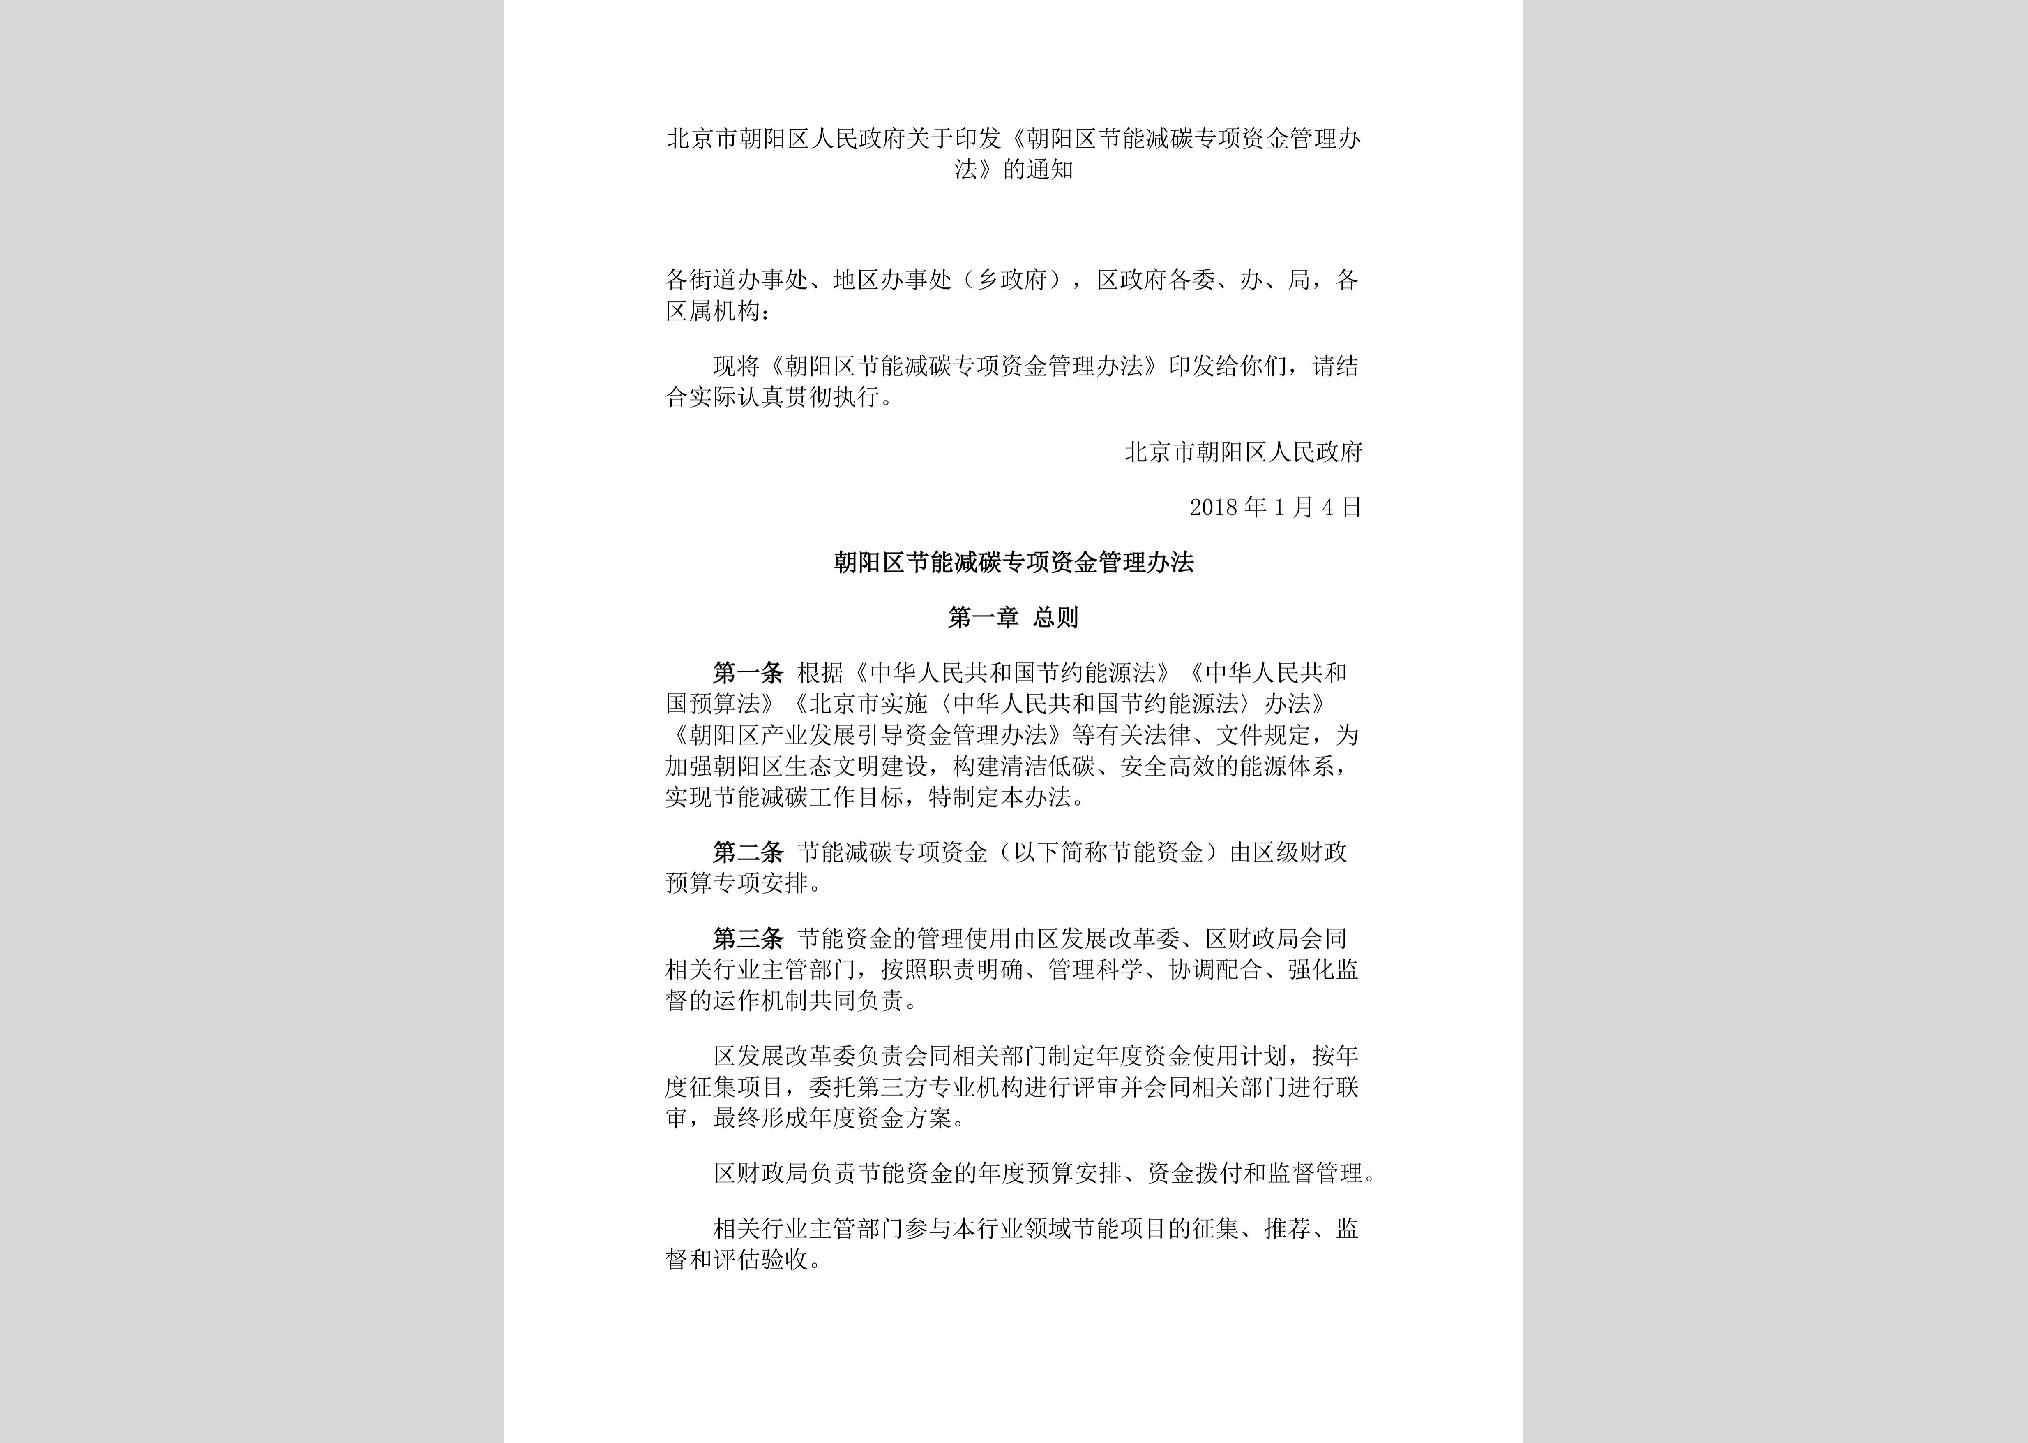 BJ-ZFYFZJTZ-2018：北京市朝阳区人民政府关于印发《朝阳区节能减碳专项资金管理办法》的通知